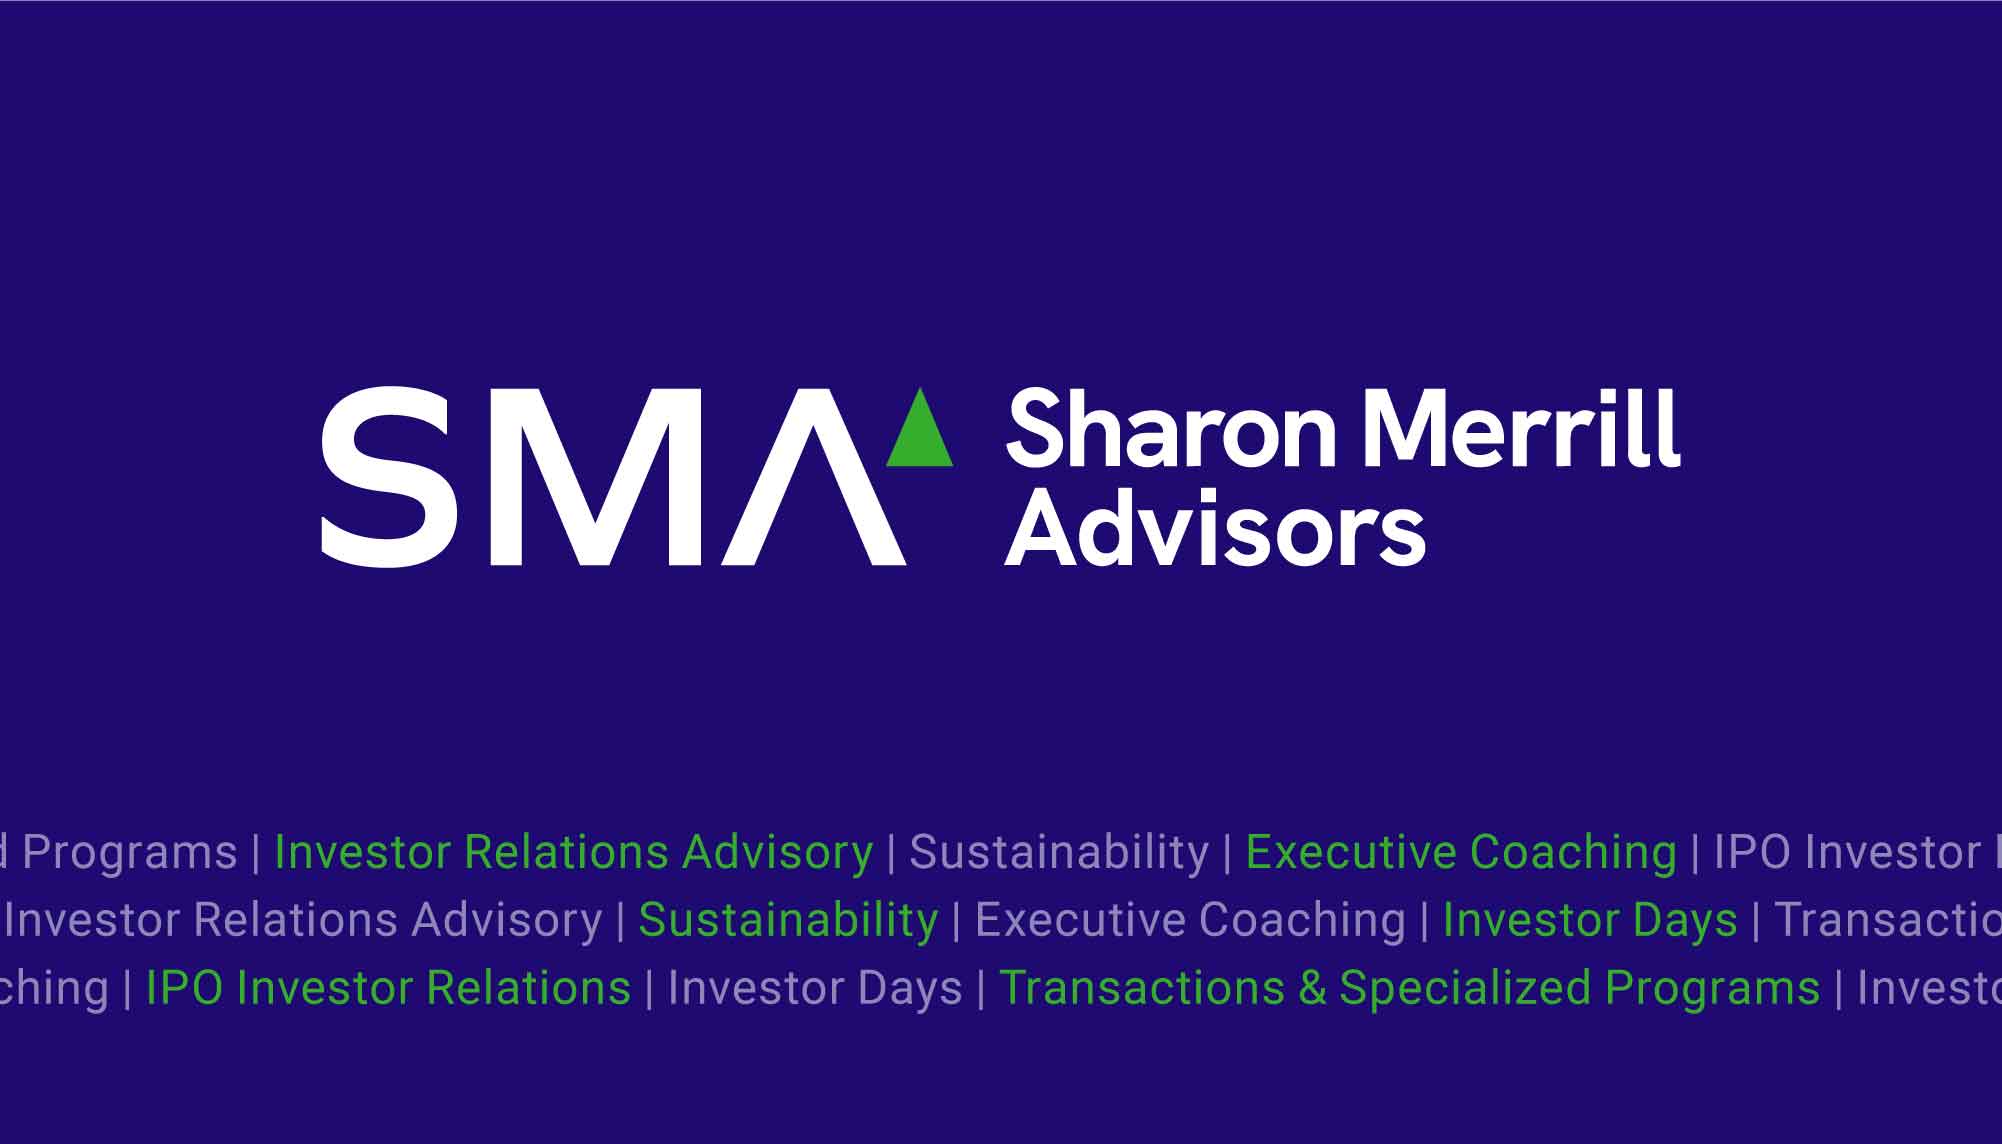 Sharon Merrill Advisors Identity and Logo